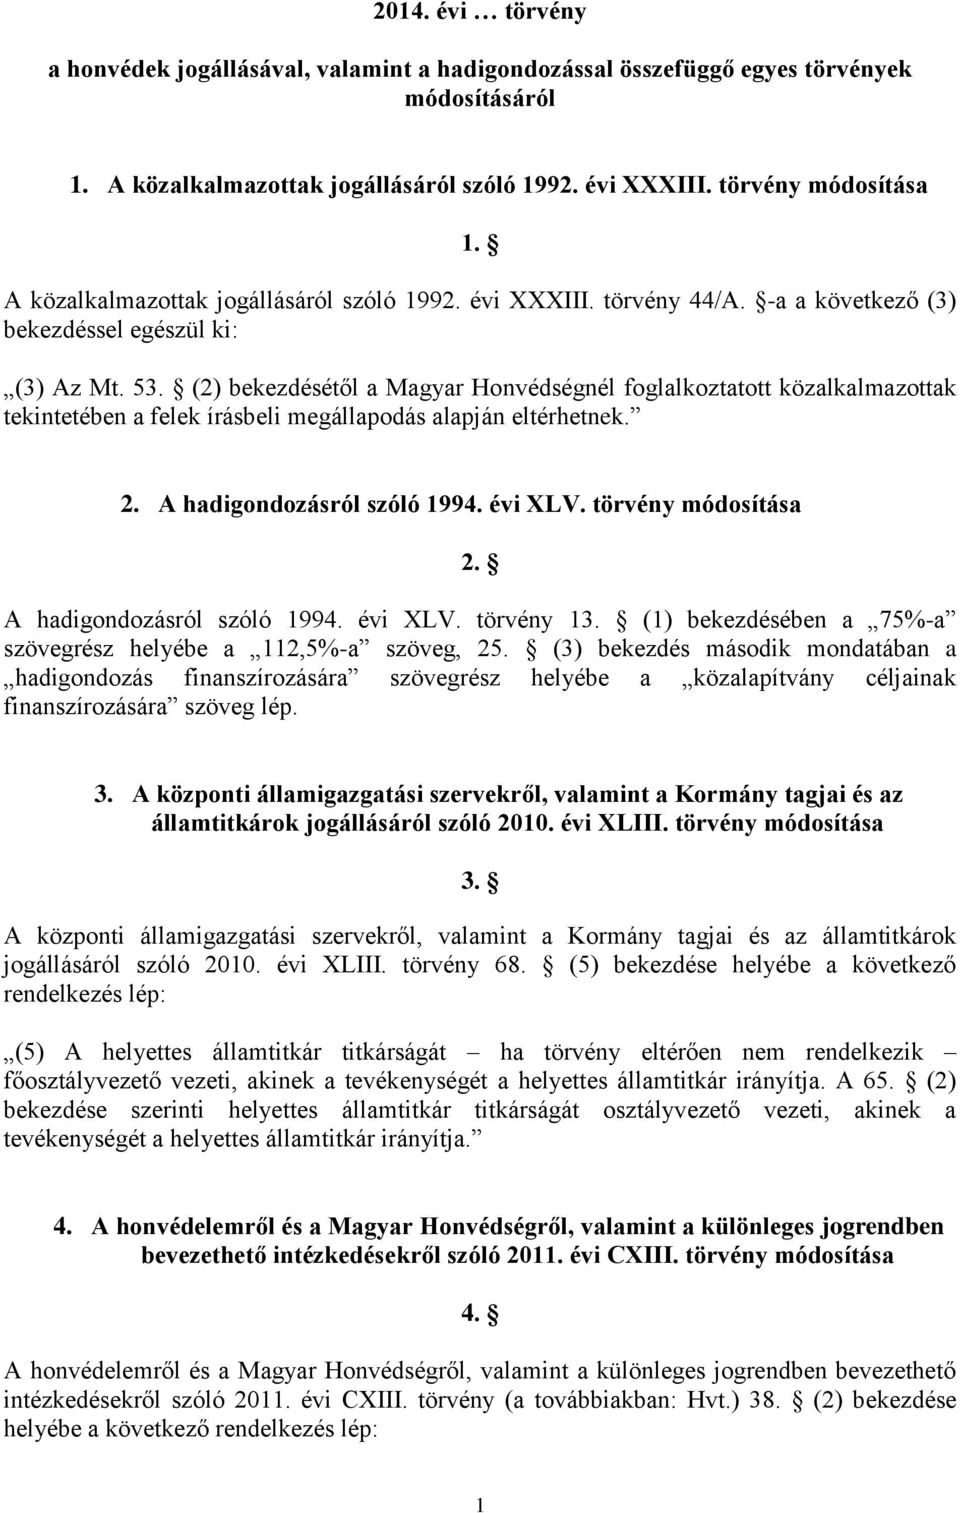 (2) bekezdésétől a Magyar Honvédségnél foglalkoztatott közalkalmazottak tekintetében a felek írásbeli megállapodás alapján eltérhetnek. 2. A hadigondozásról szóló 1994. évi XLV. törvény módosítása 2.